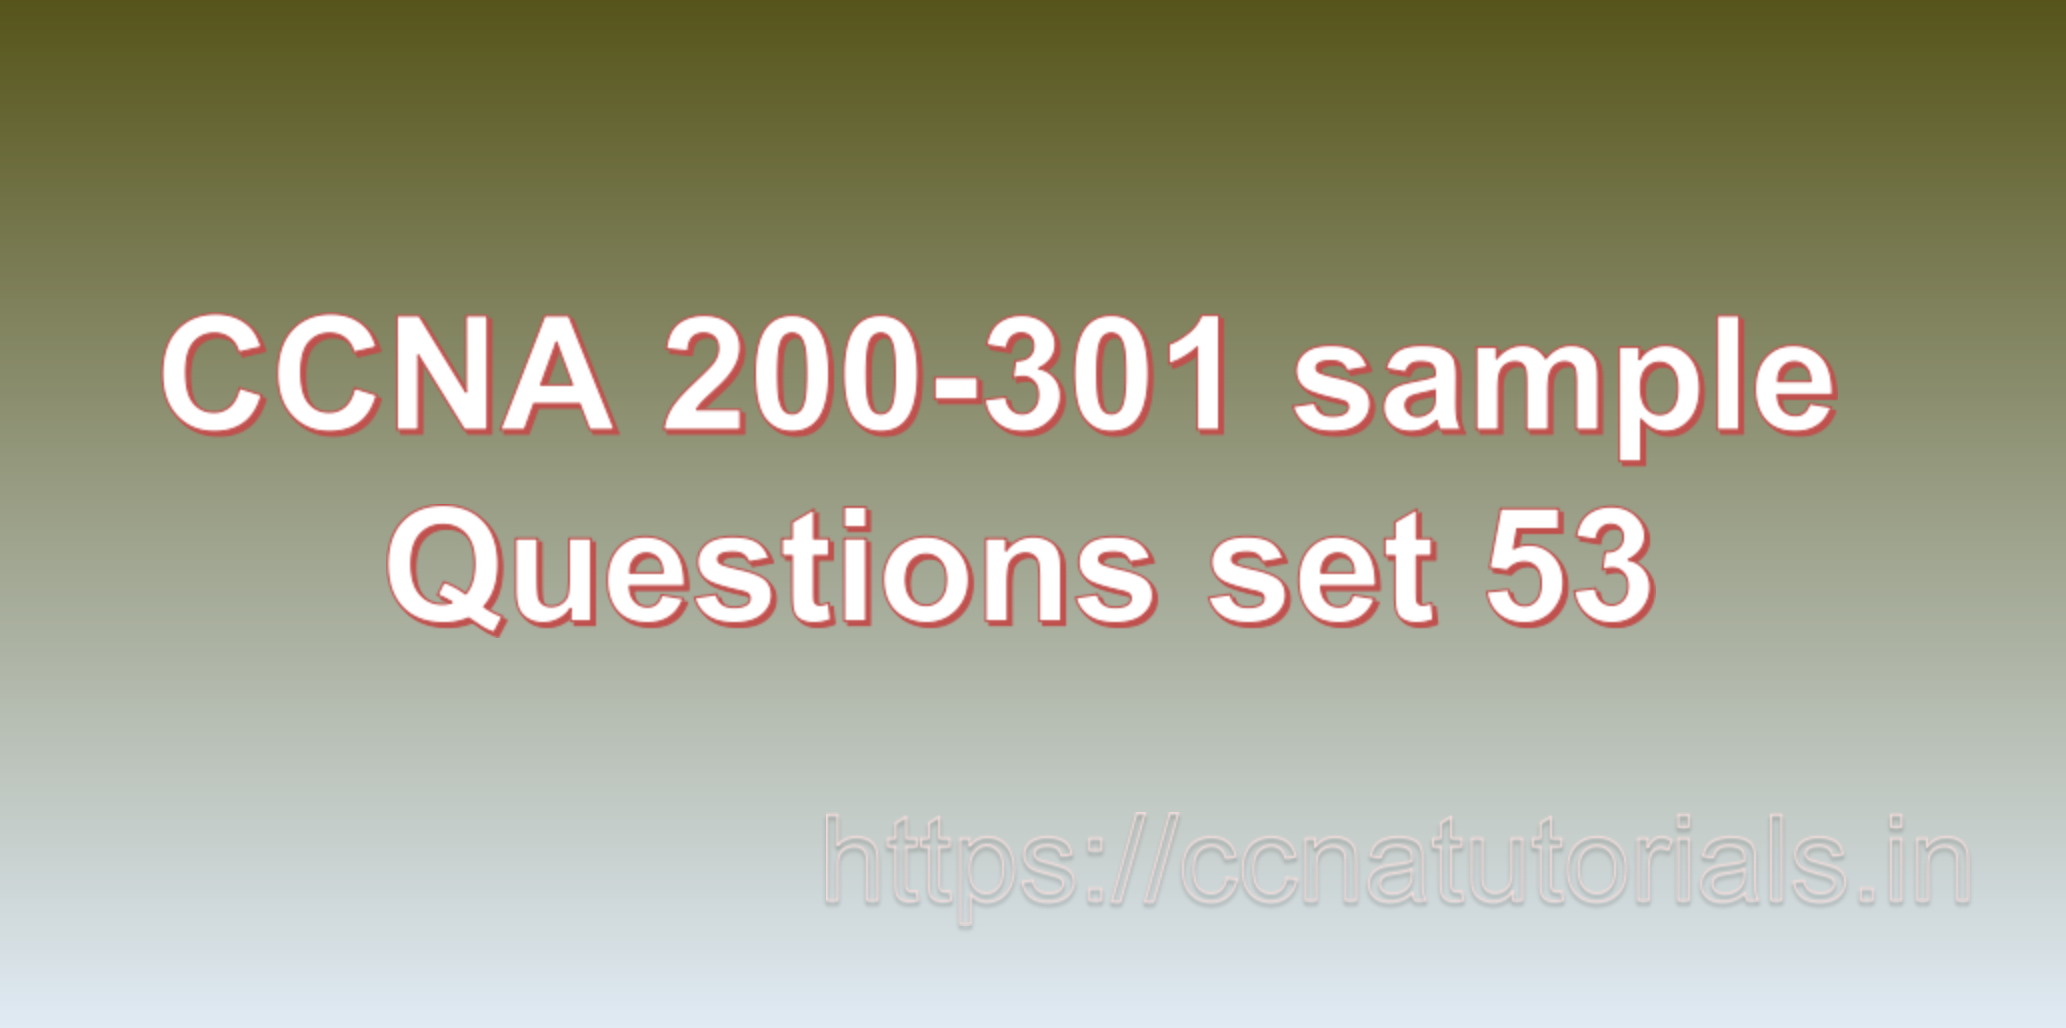 ccna sample questions set 53, ccna tutorials, CCNA Exam, ccna